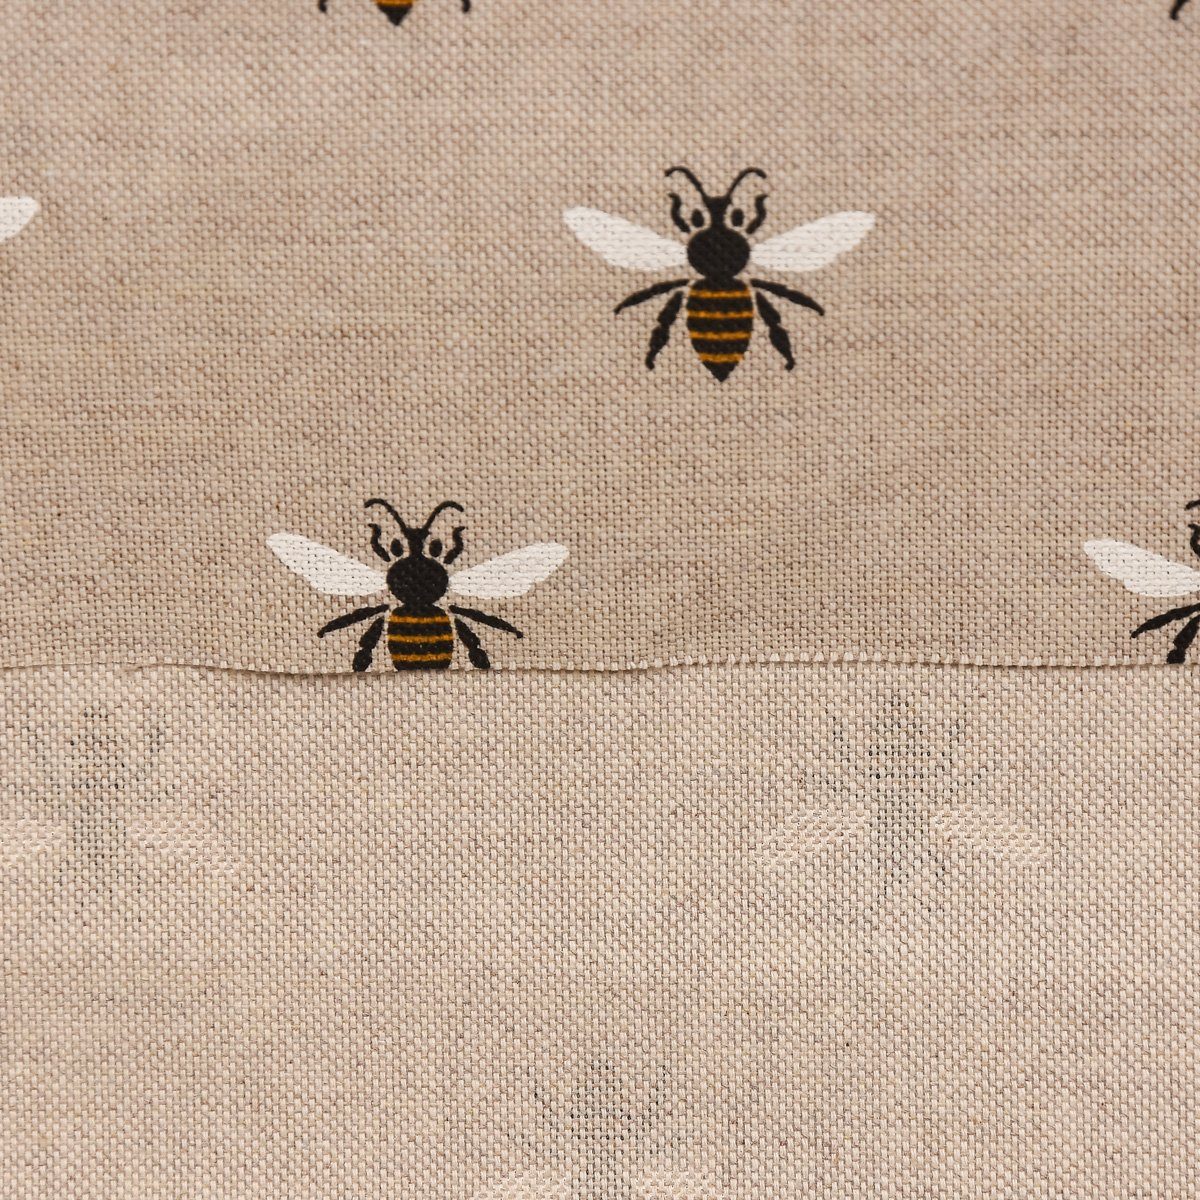 Größen, handmade Tischdecke SCHÖNER LEBEN. natur verschiedenen Bienen SCHÖNER in Tischdecke LEBEN. eckig